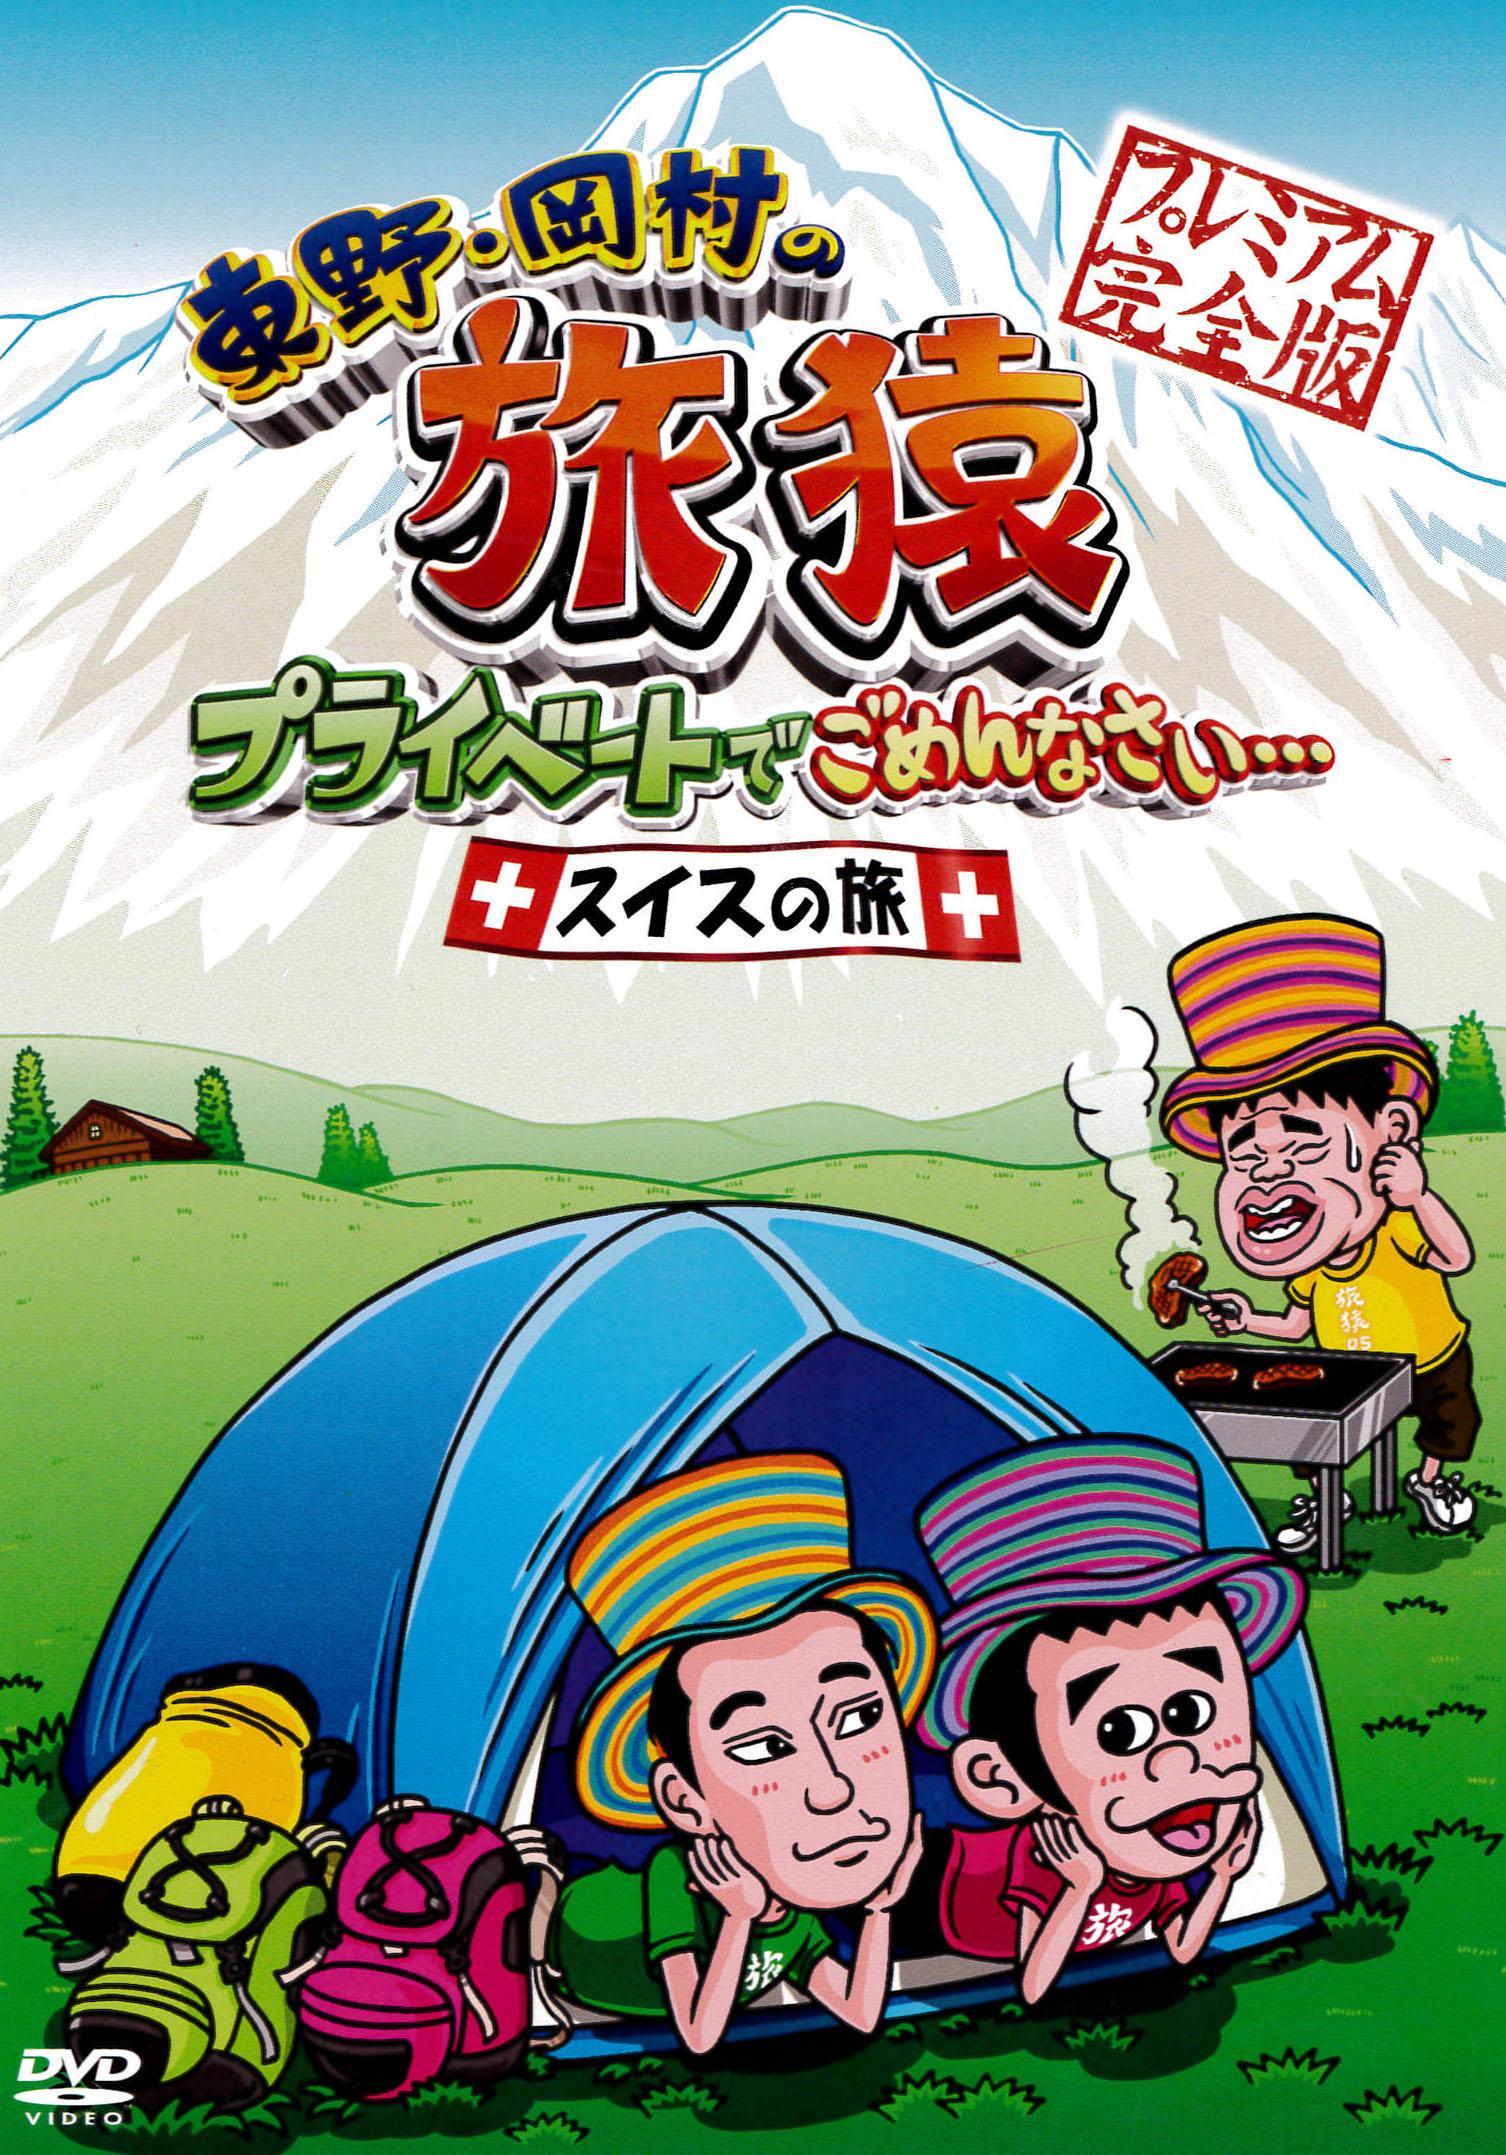 東野・岡村の旅猿 プライベートでごめんなさい・・・ スイスの旅 プレミアム完全版 宅配DVDレンタルのTSUTAYA DISCAS